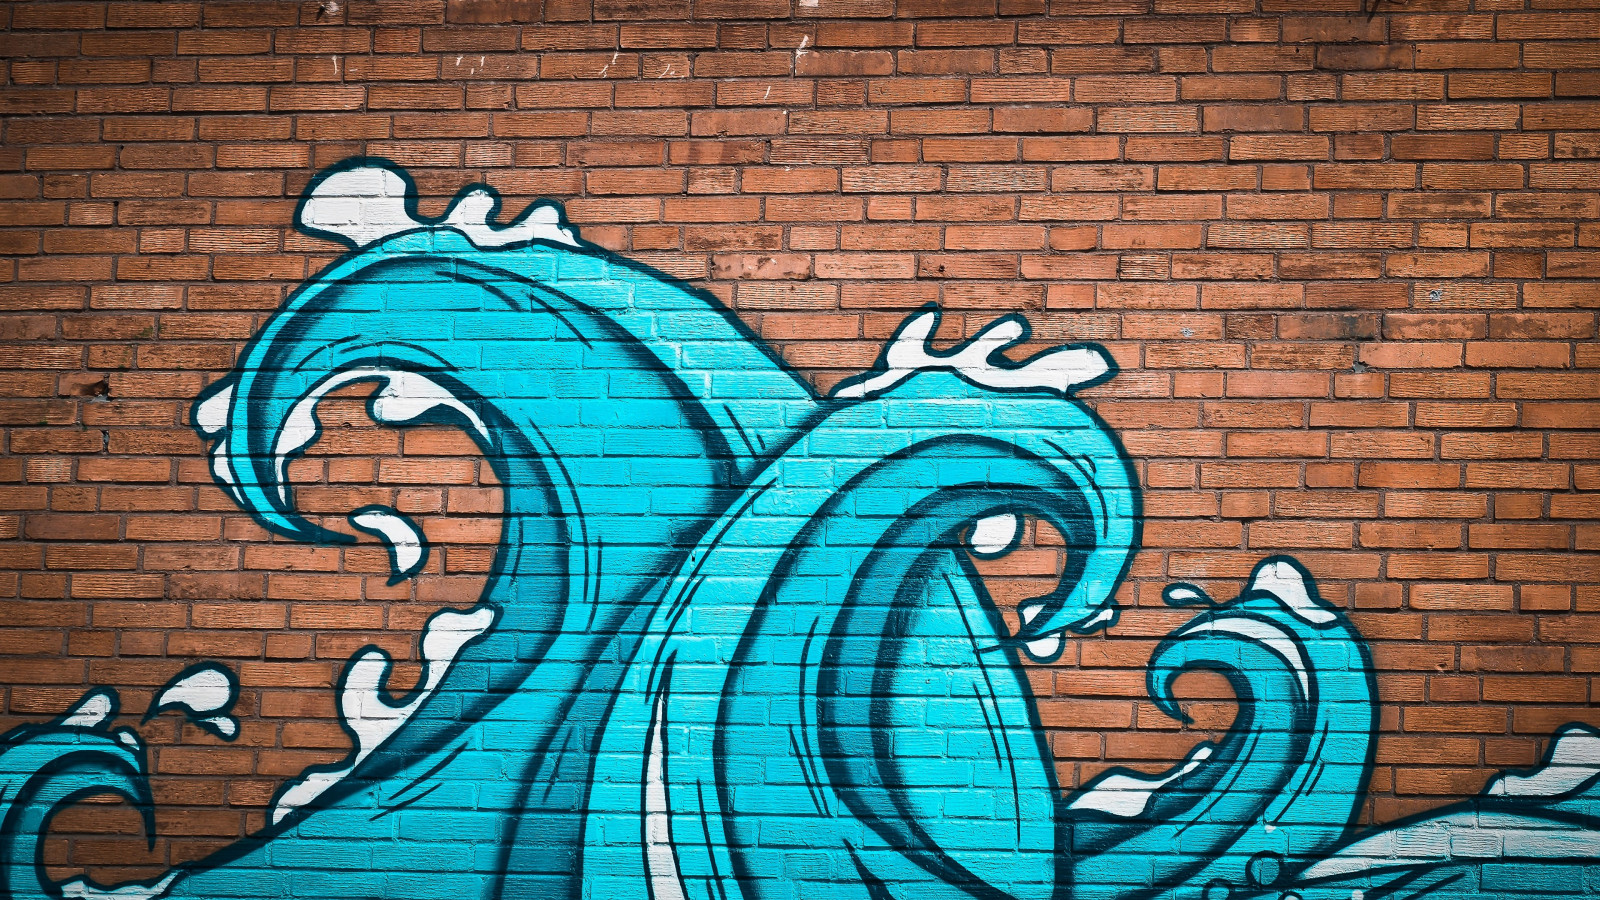 Graffiti waves on brick wall wallpaper 1600x900